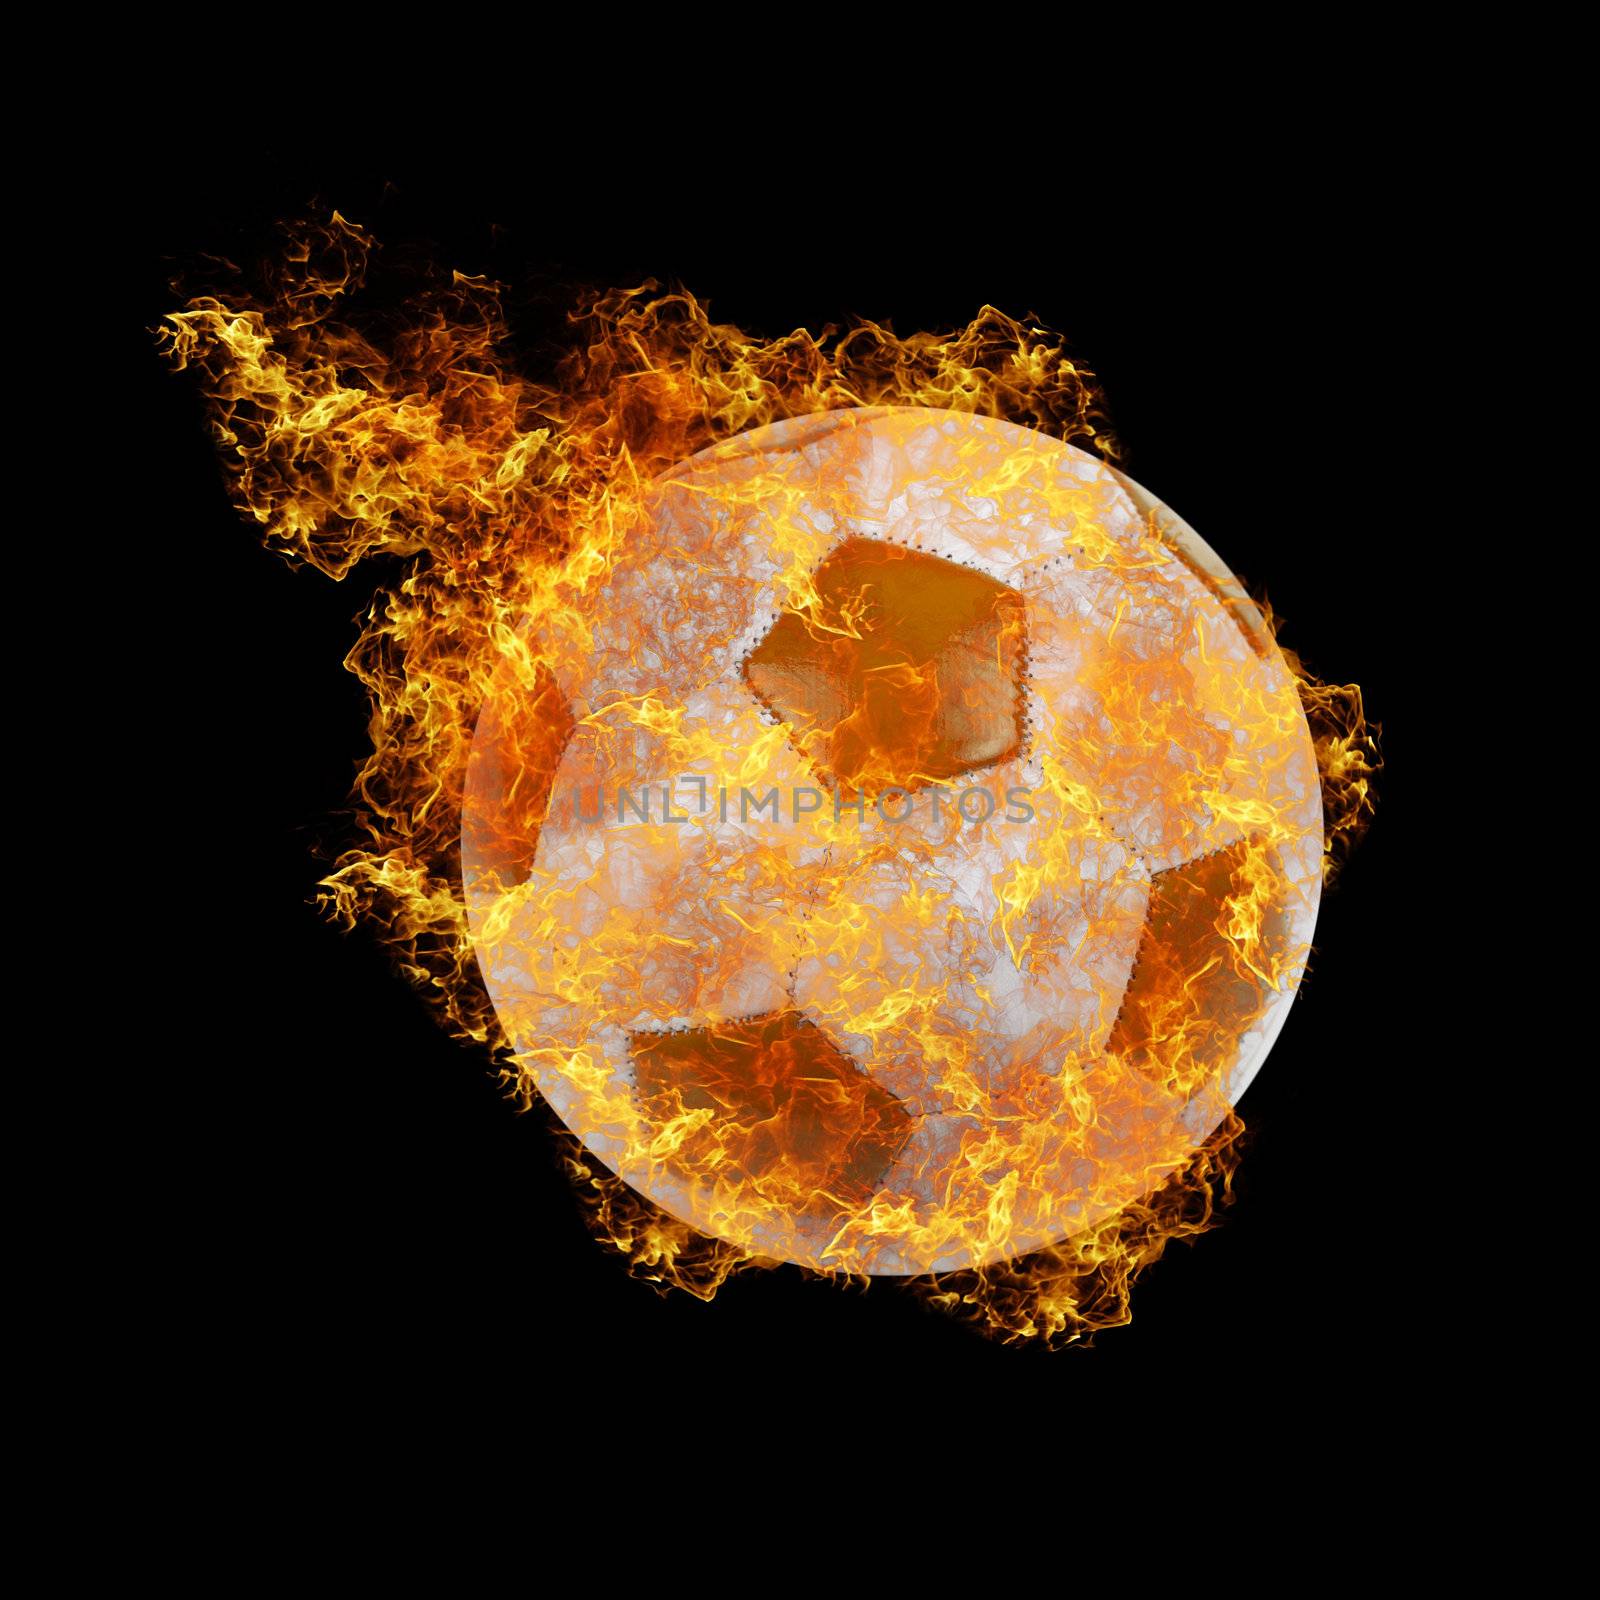 fire soccer ball by rusak